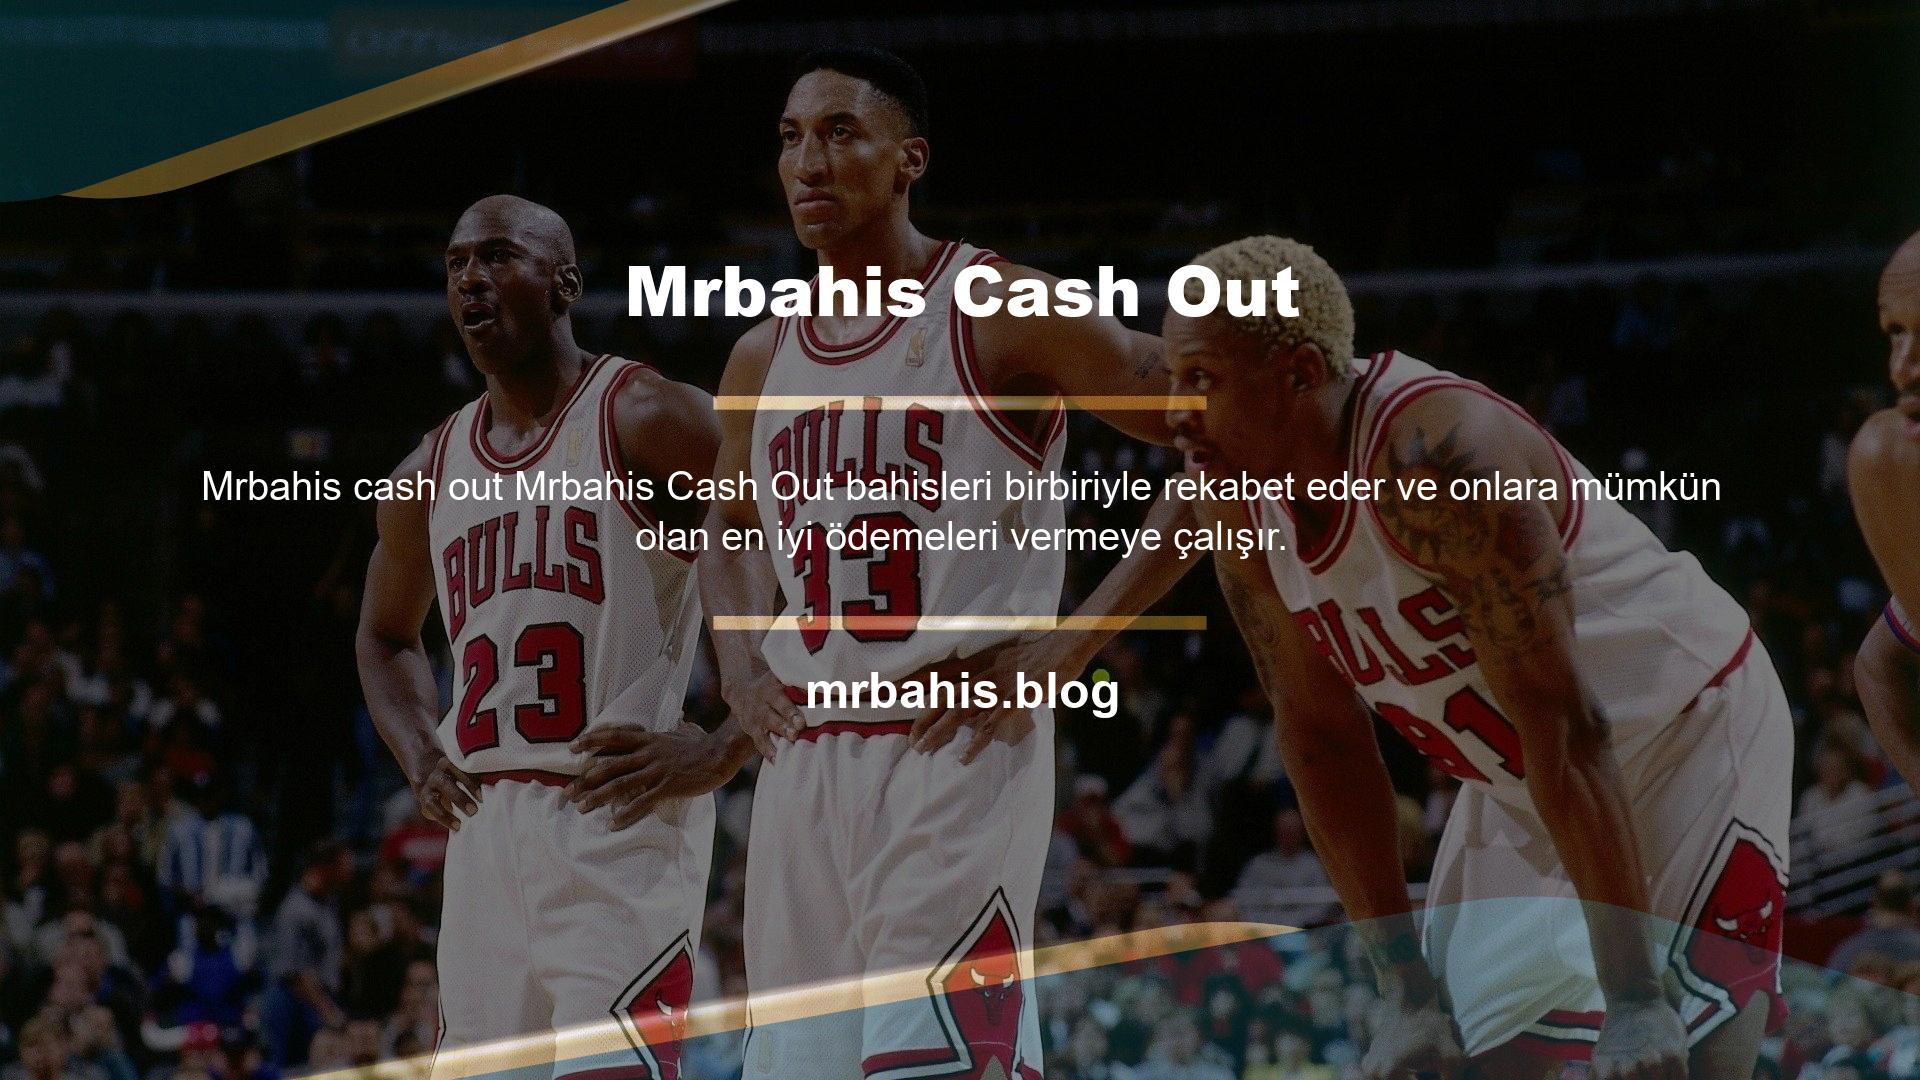 Mrbahis Cash Out en güvenilir yayınlara ve en kaliteli yapıya sahip bahis sitelerinden biridir